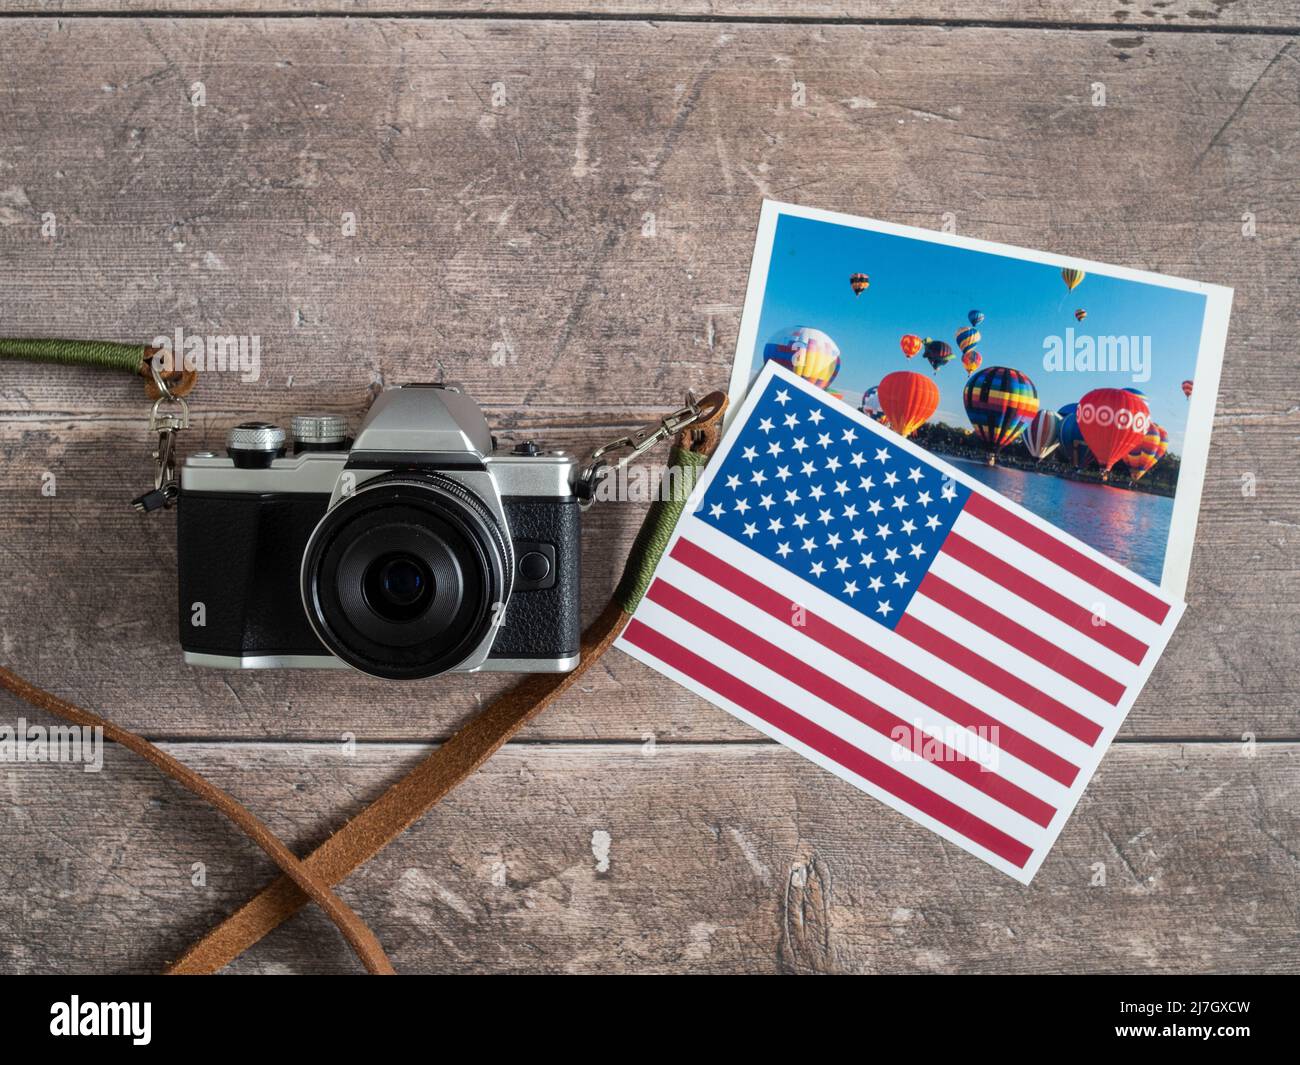 Reisen in die Vereinigten Staaten für Urlaub mit Urlaub Snap und Flagge Bild Konzept Stockfoto